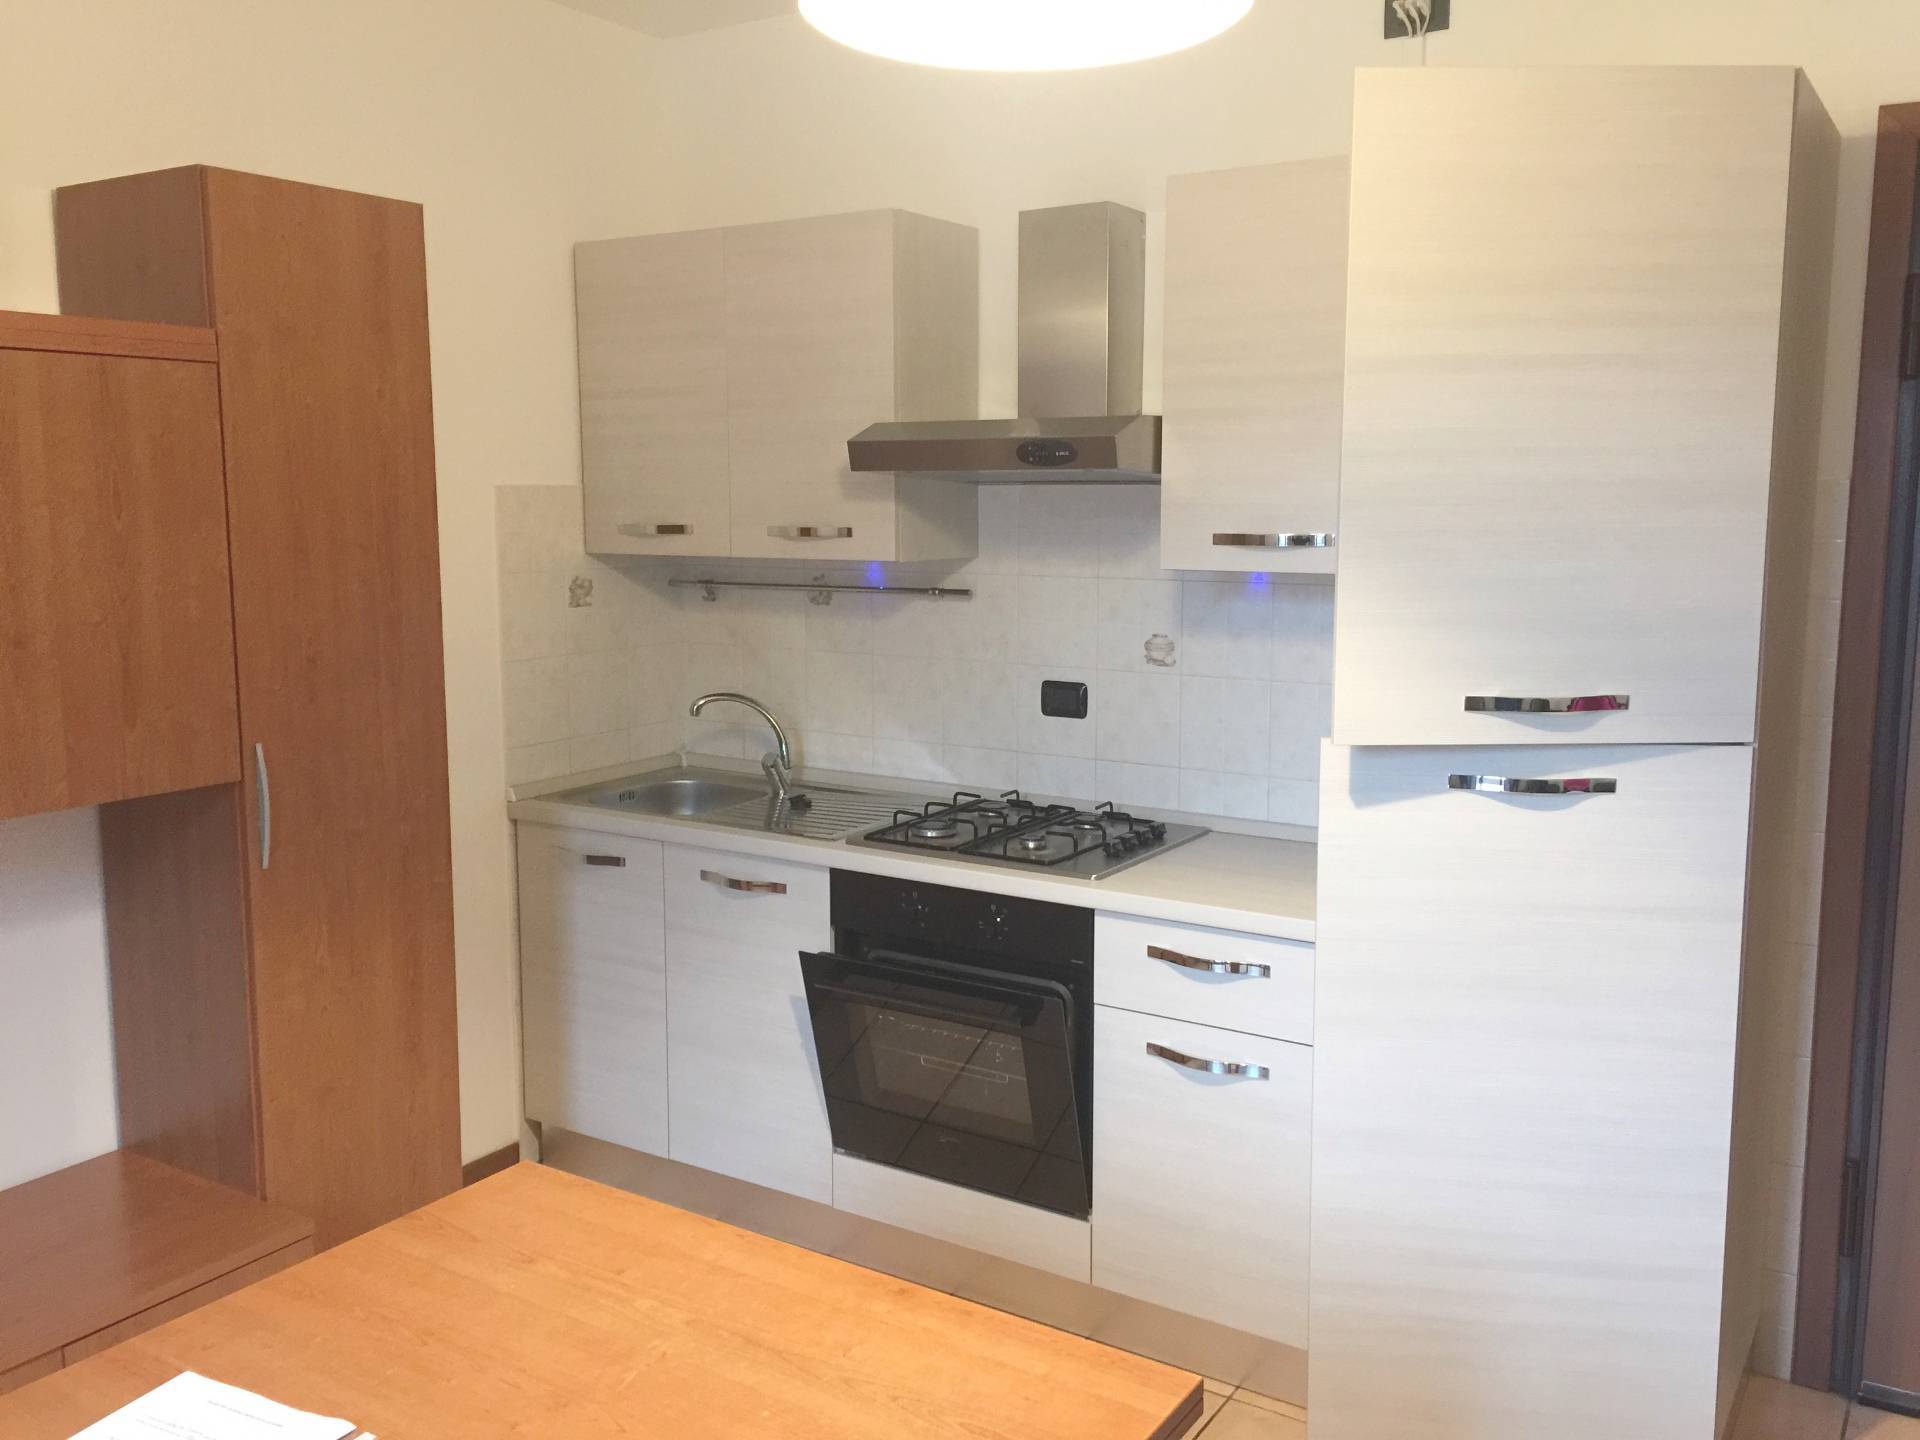 Appartamento in affitto a Olgiate Molgora, 2 locali, prezzo € 450 | CambioCasa.it